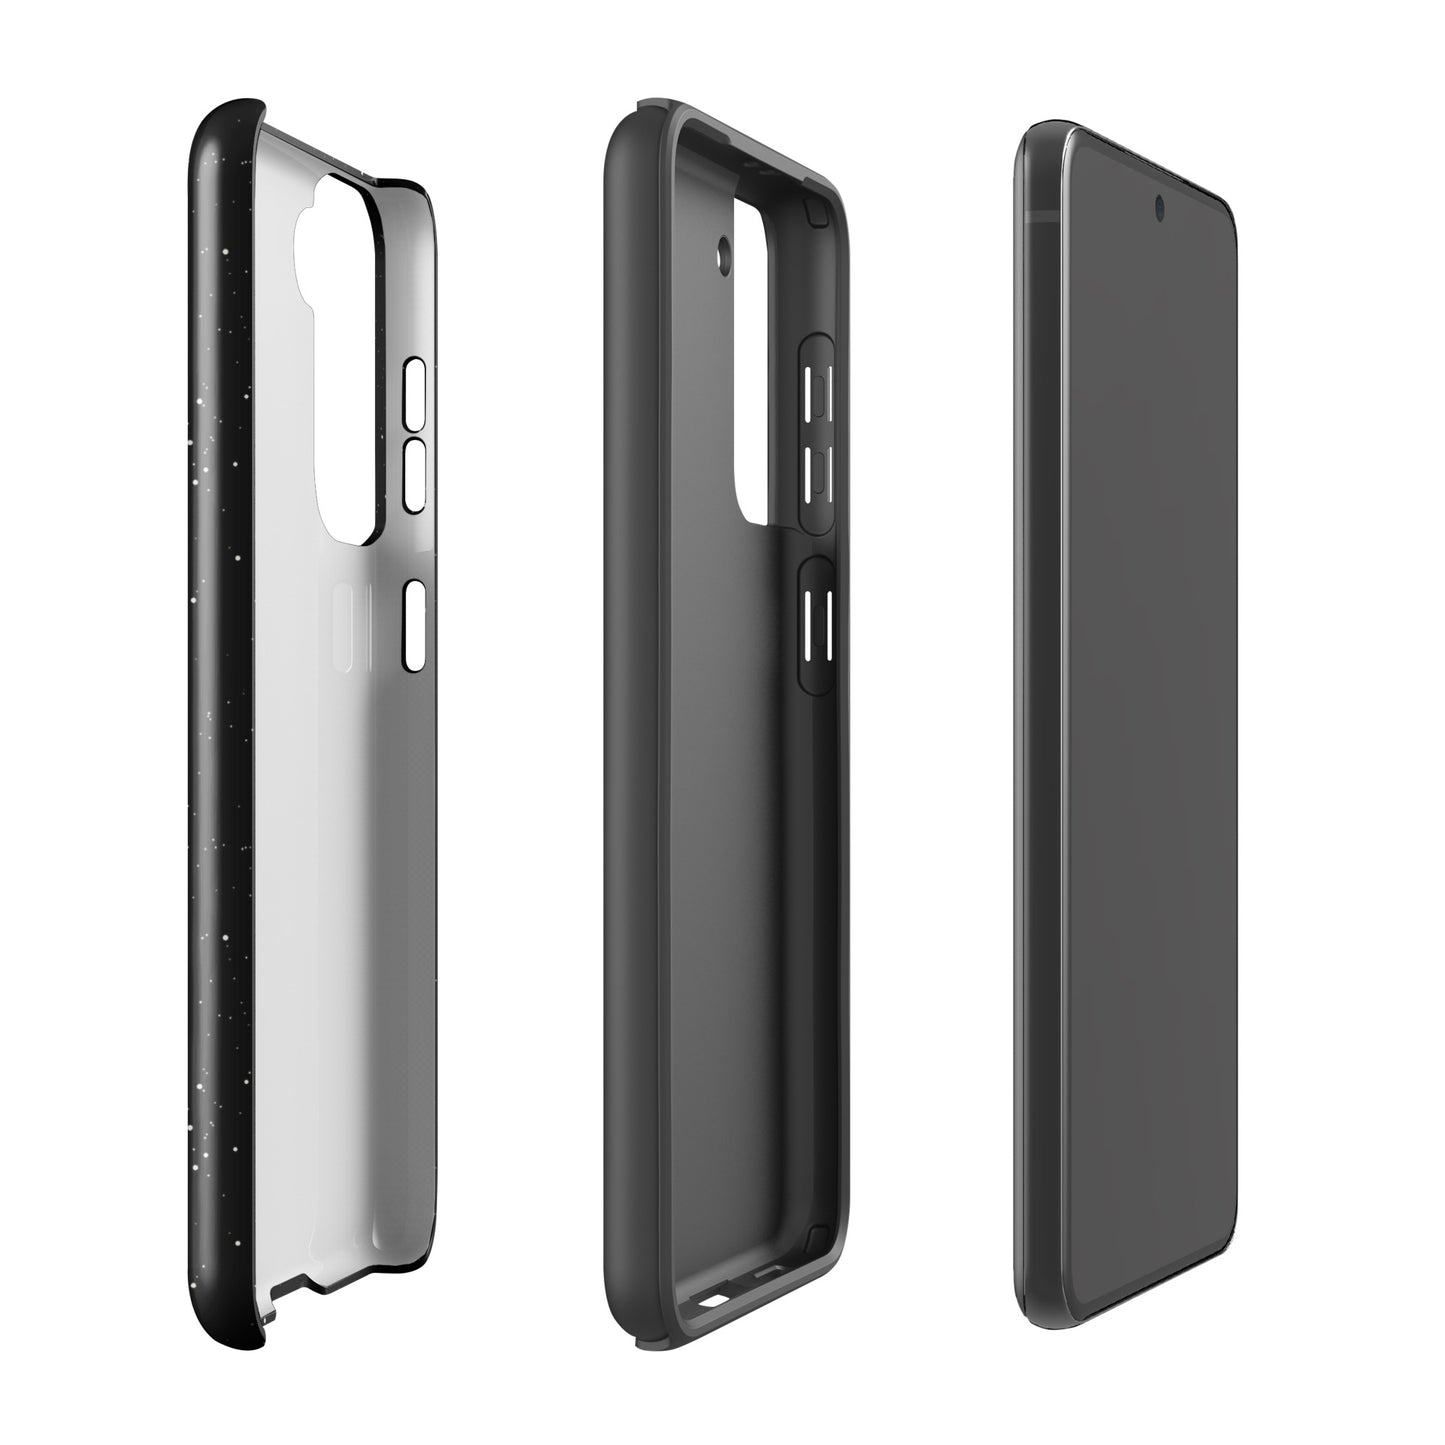 Morbid Celestial Design Tough Phone Case - Samsung